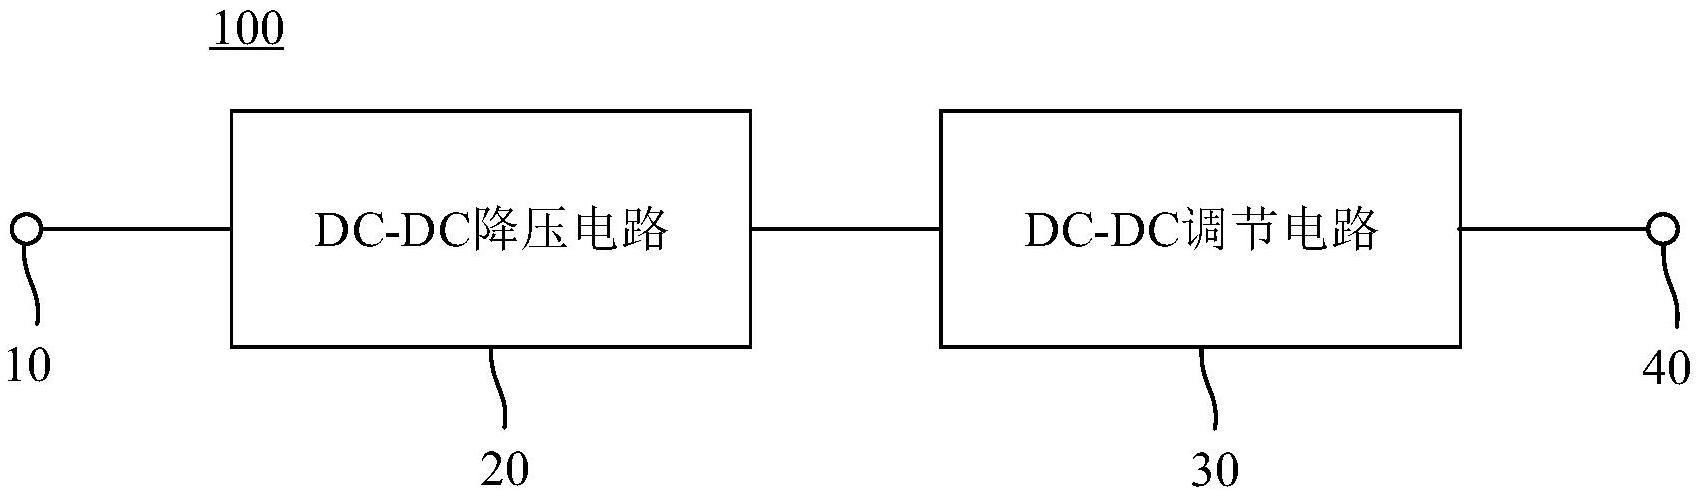 DC-DC转换电路、DC-DC转换器以及电视机的制作方法